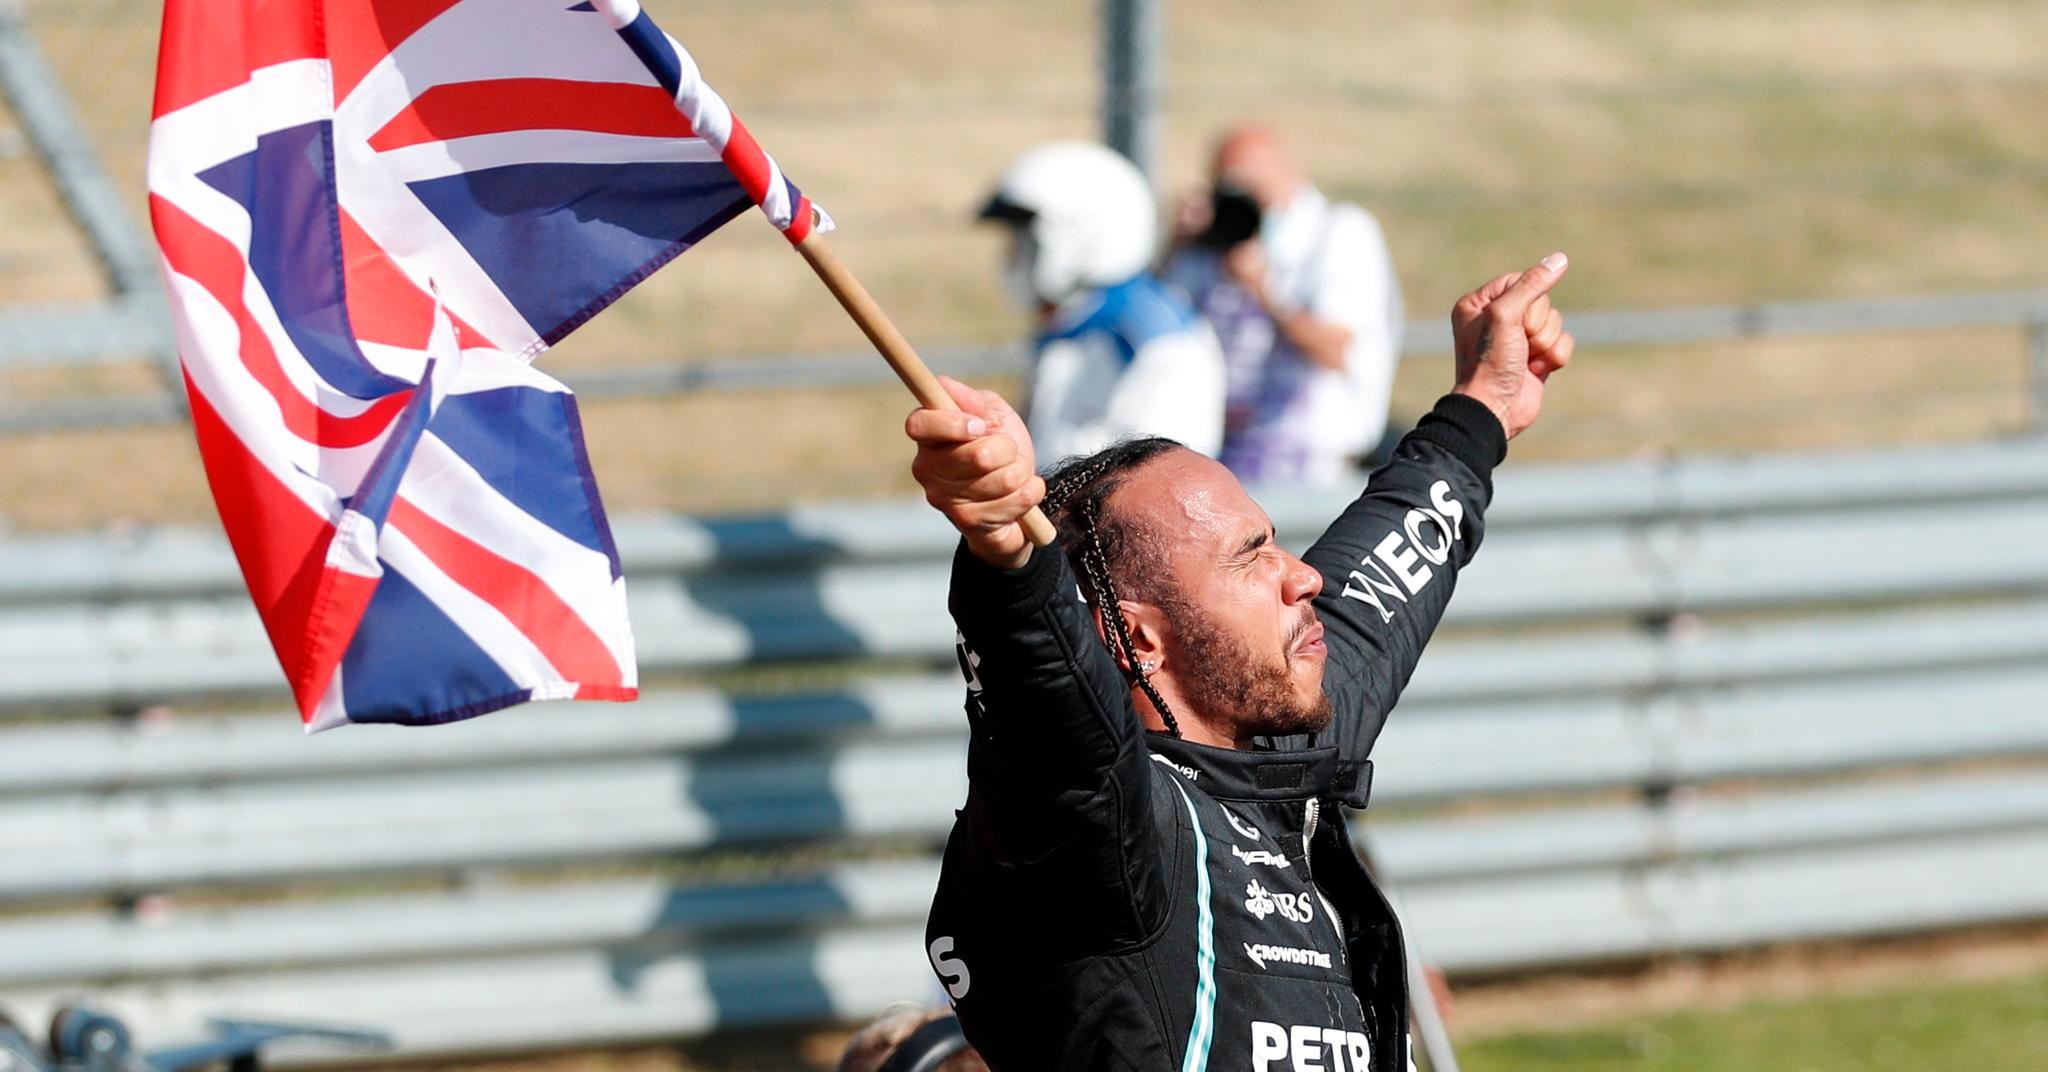 Lewis Hamilton vant fjorårets utgave av britiske Grand Prix, men ikke uten dramatikk. 